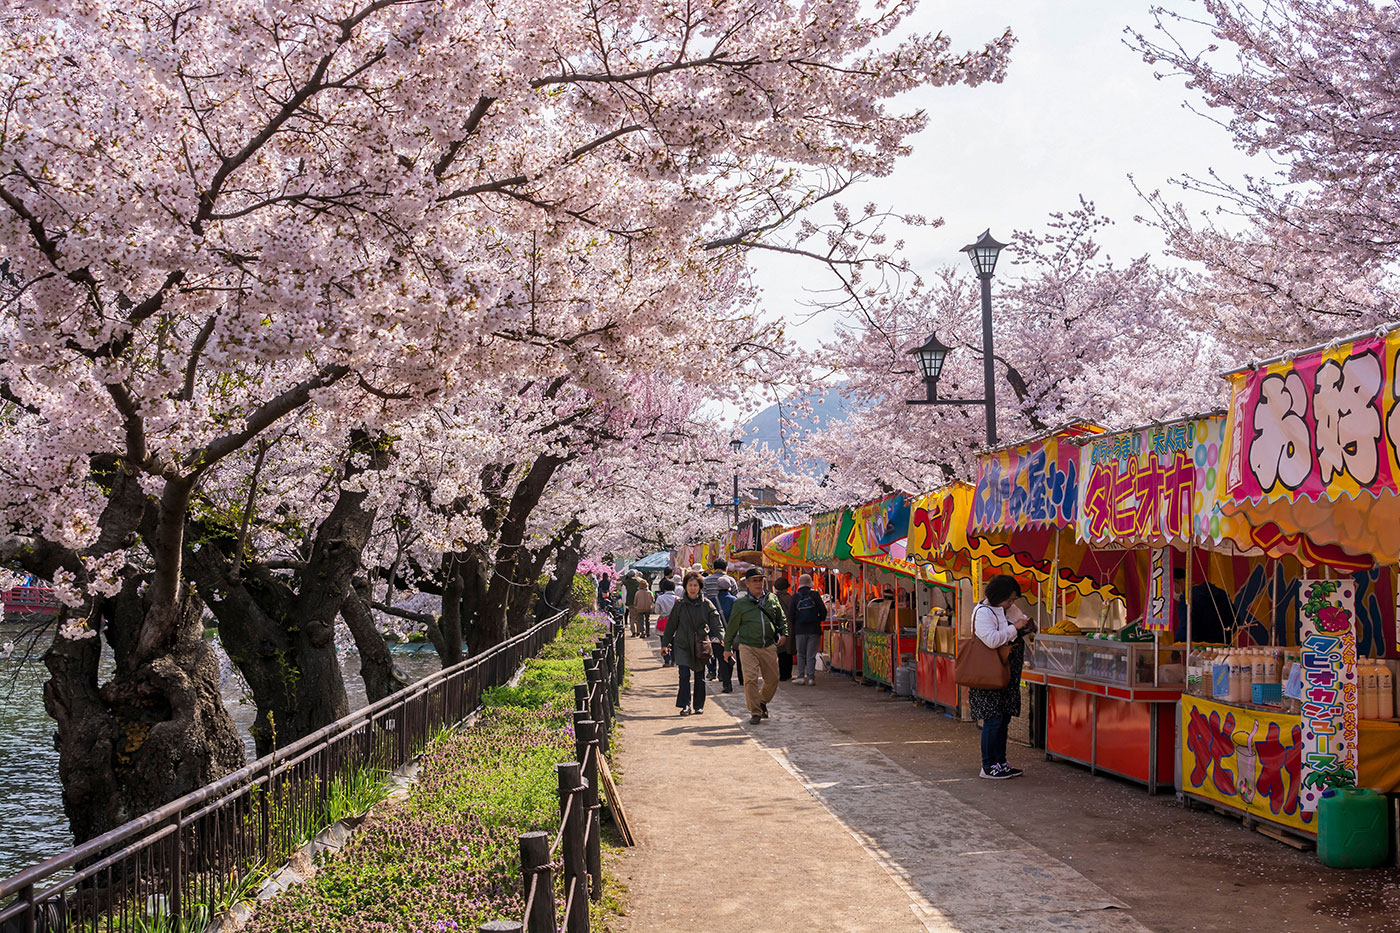 벚꽃 시즌이 되면 활기 넘치게 변하는 나가노의 가류 공원을 방문해서 매력적인 시장을 둘러보고 아름다운 풍경을 즐겨보자